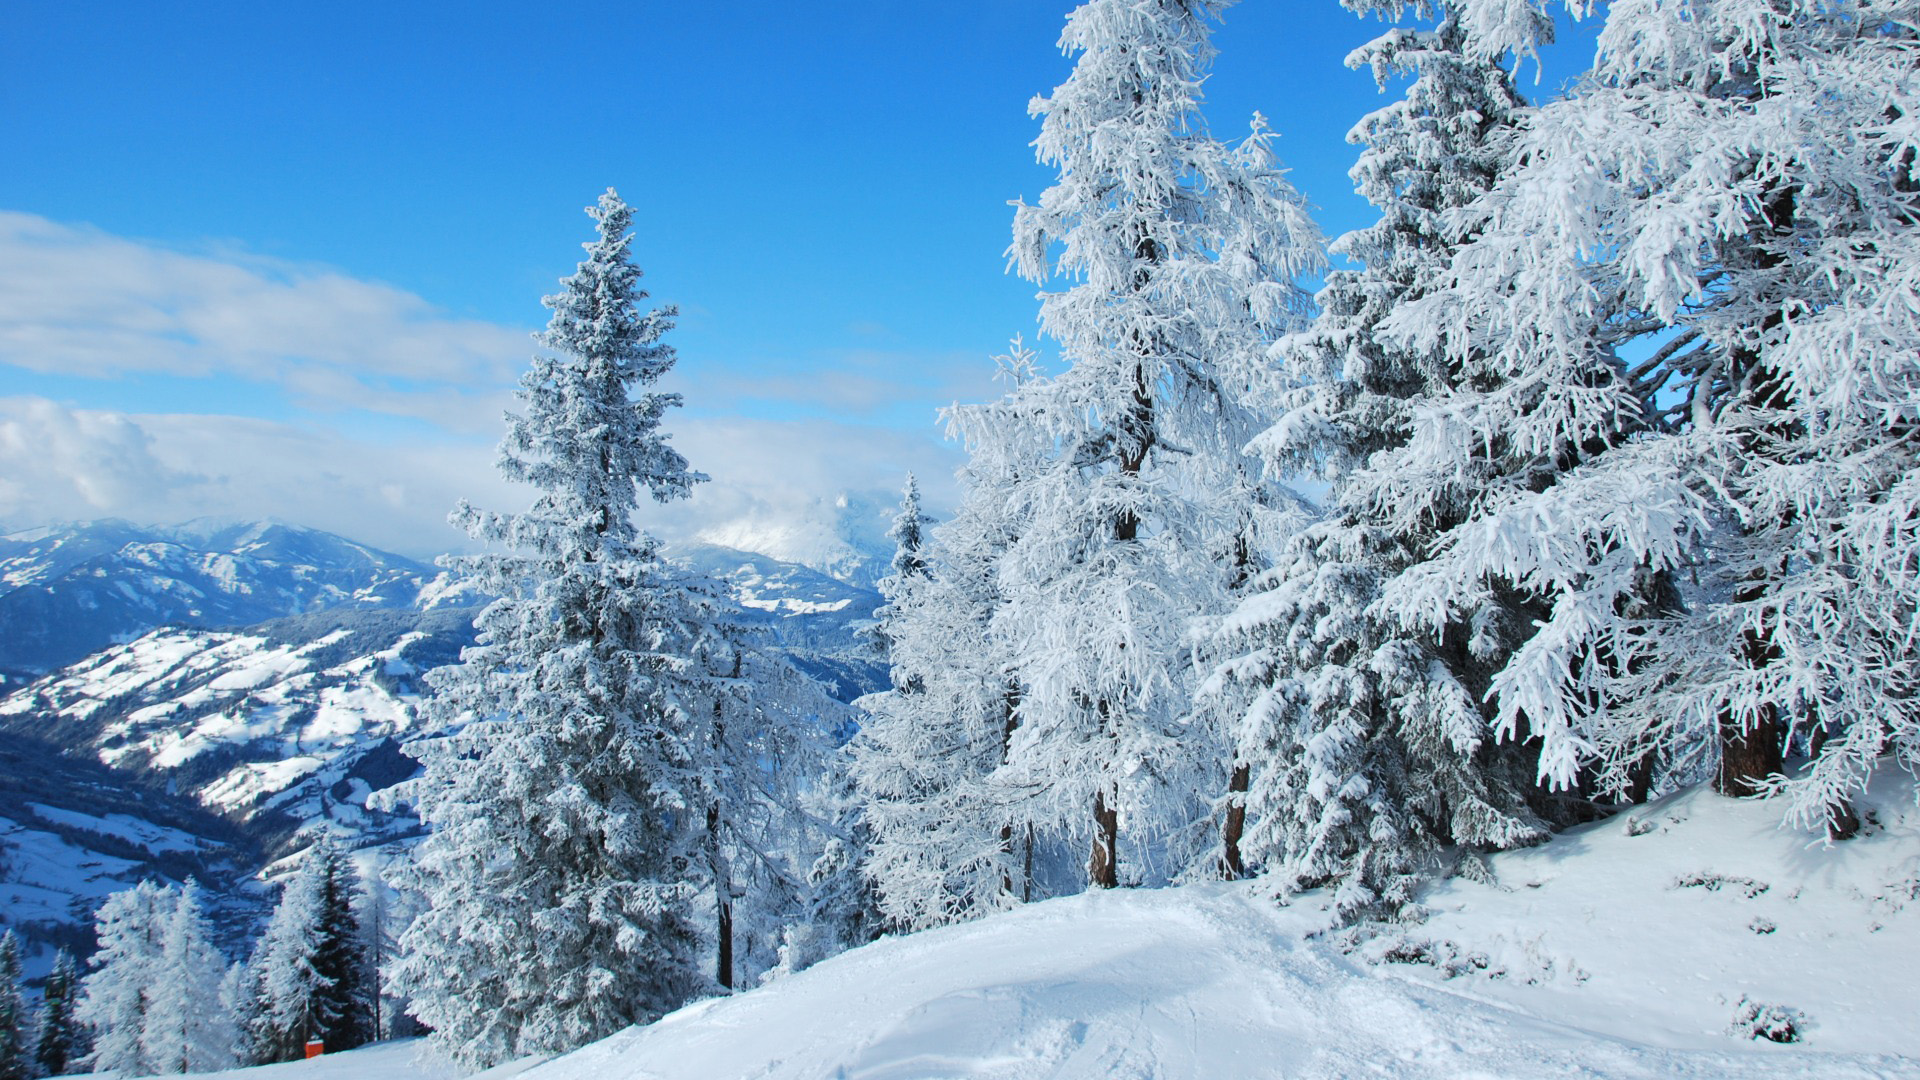 奥地利,森林,冬天,雪地,自然风景桌面壁纸